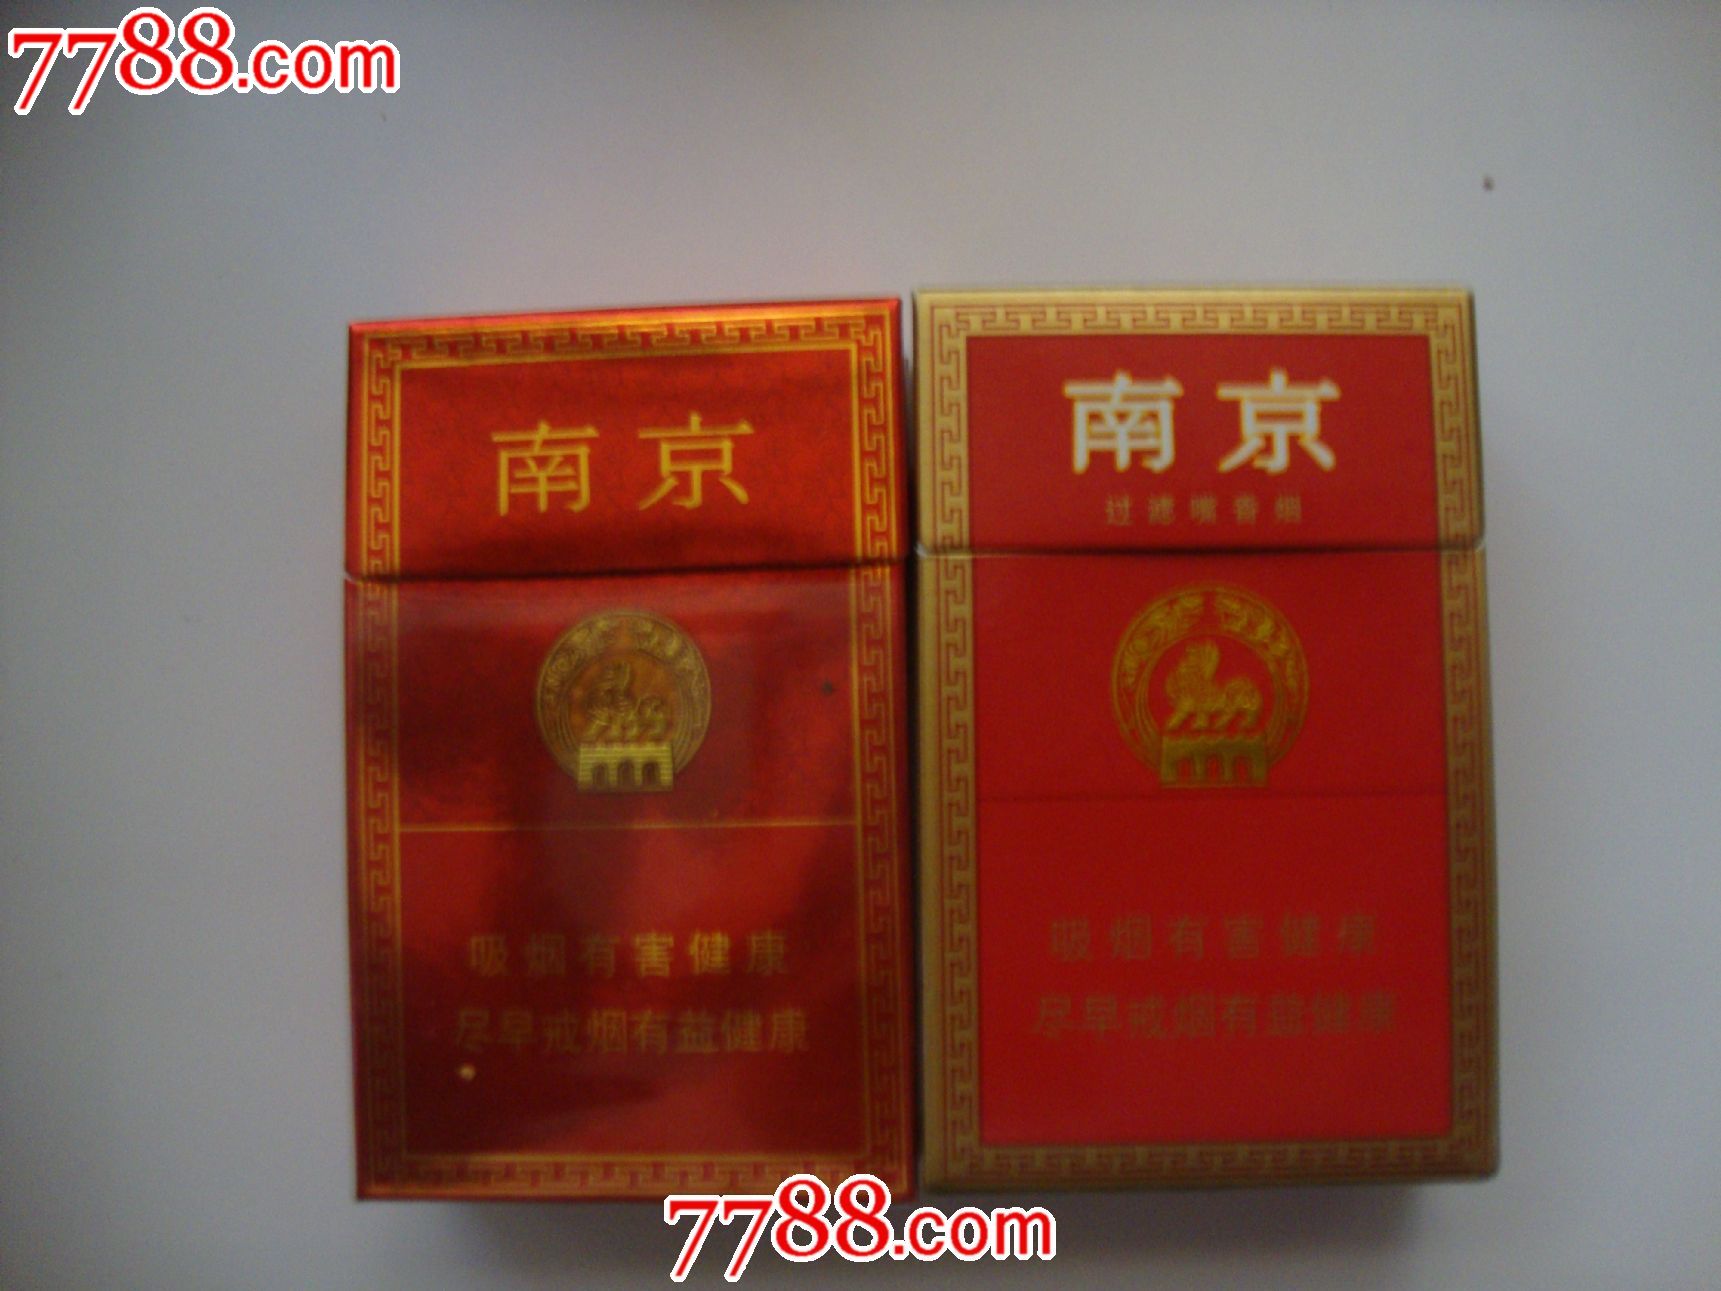 南京-价格:1元-se23279890-烟标/烟盒-零售-7788收藏__收藏热线